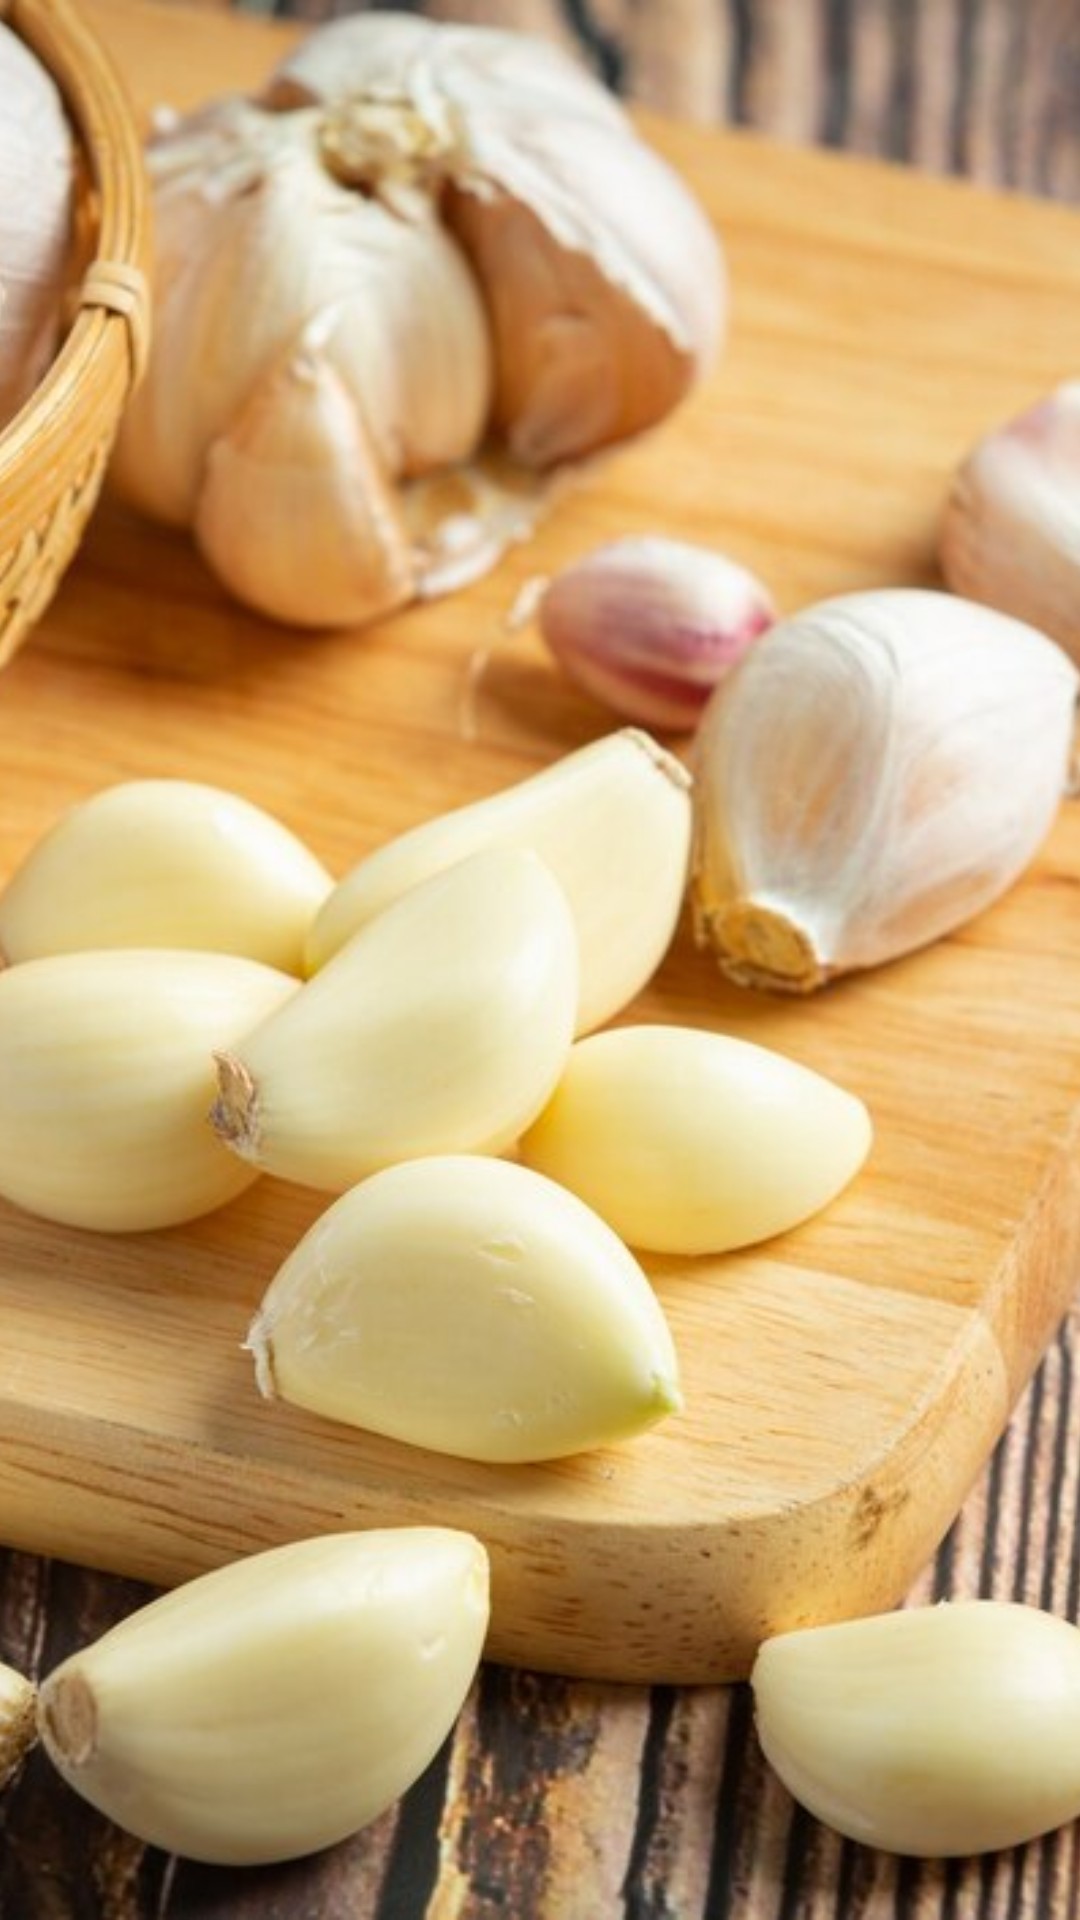 Benefits of Garlic: अपचन, सांधेदुखी, सर्दी-खोकला सर्व समस्यांवर लसूण हाच उपाय; पण खाण्याची योग्य वेळ काय?